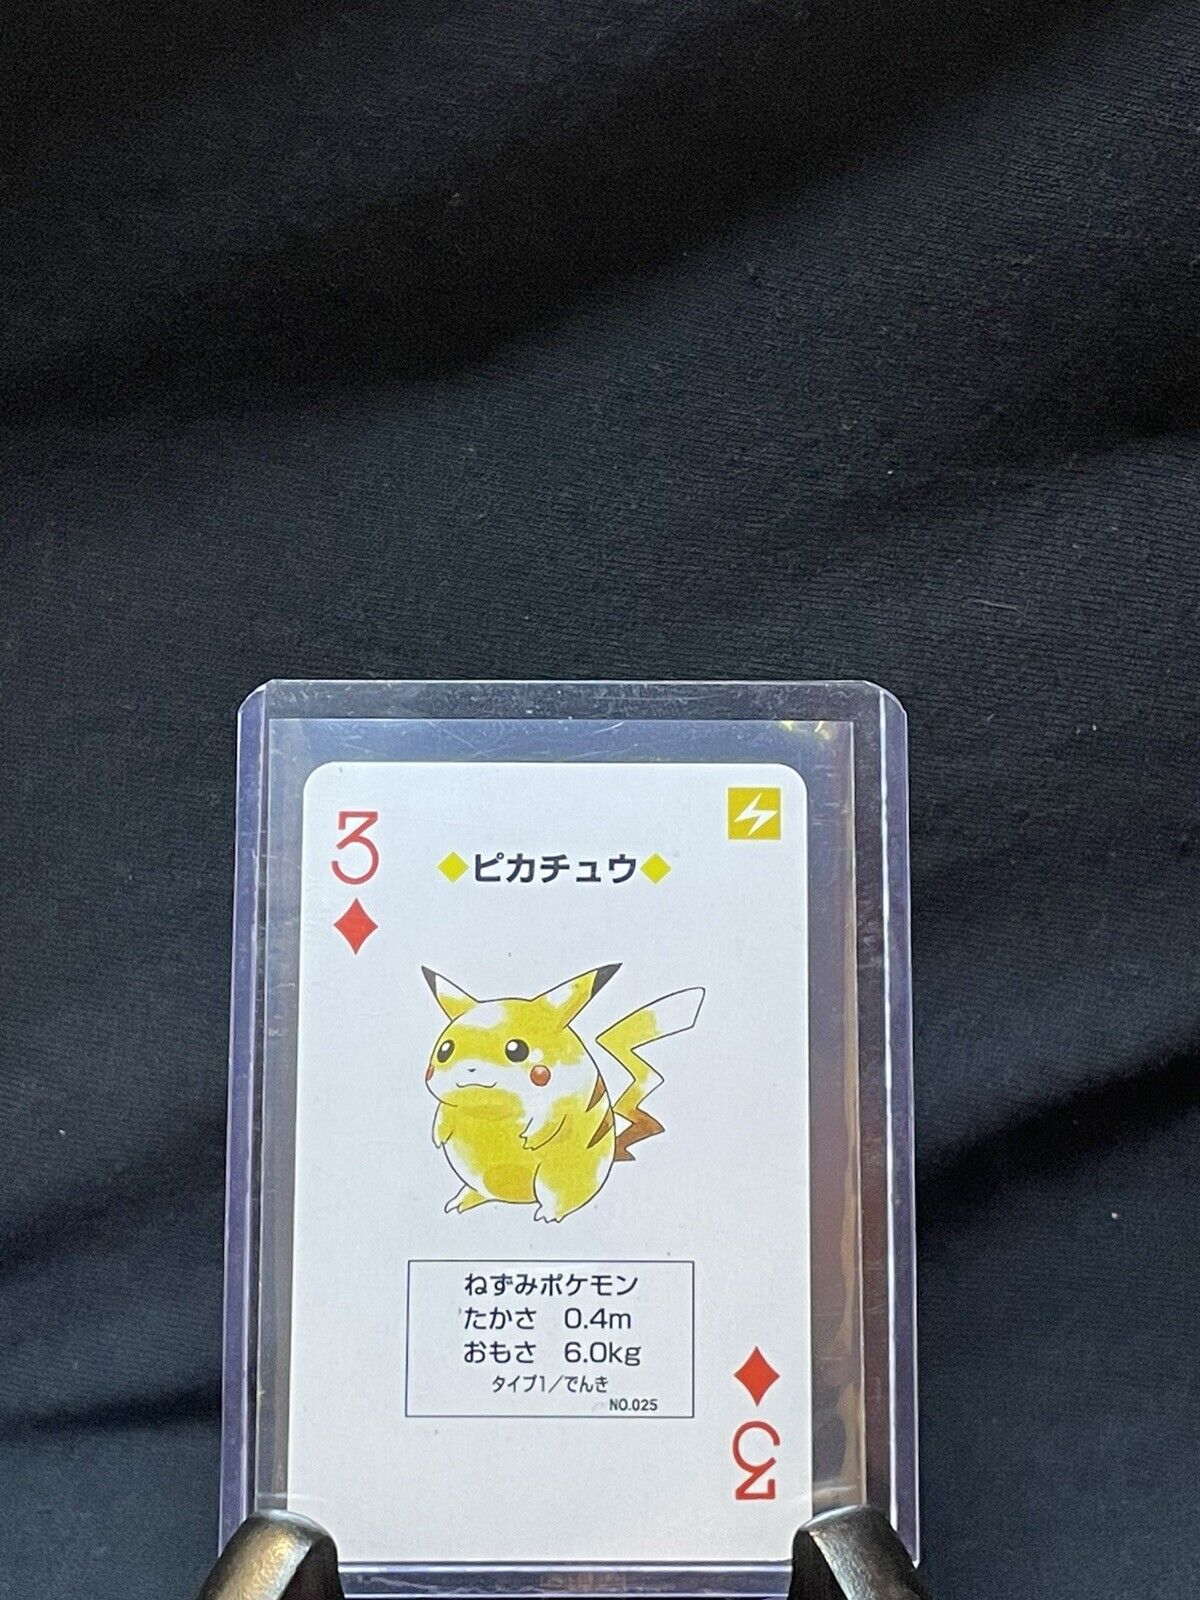 Pokémon Playing Card 3 Diamond